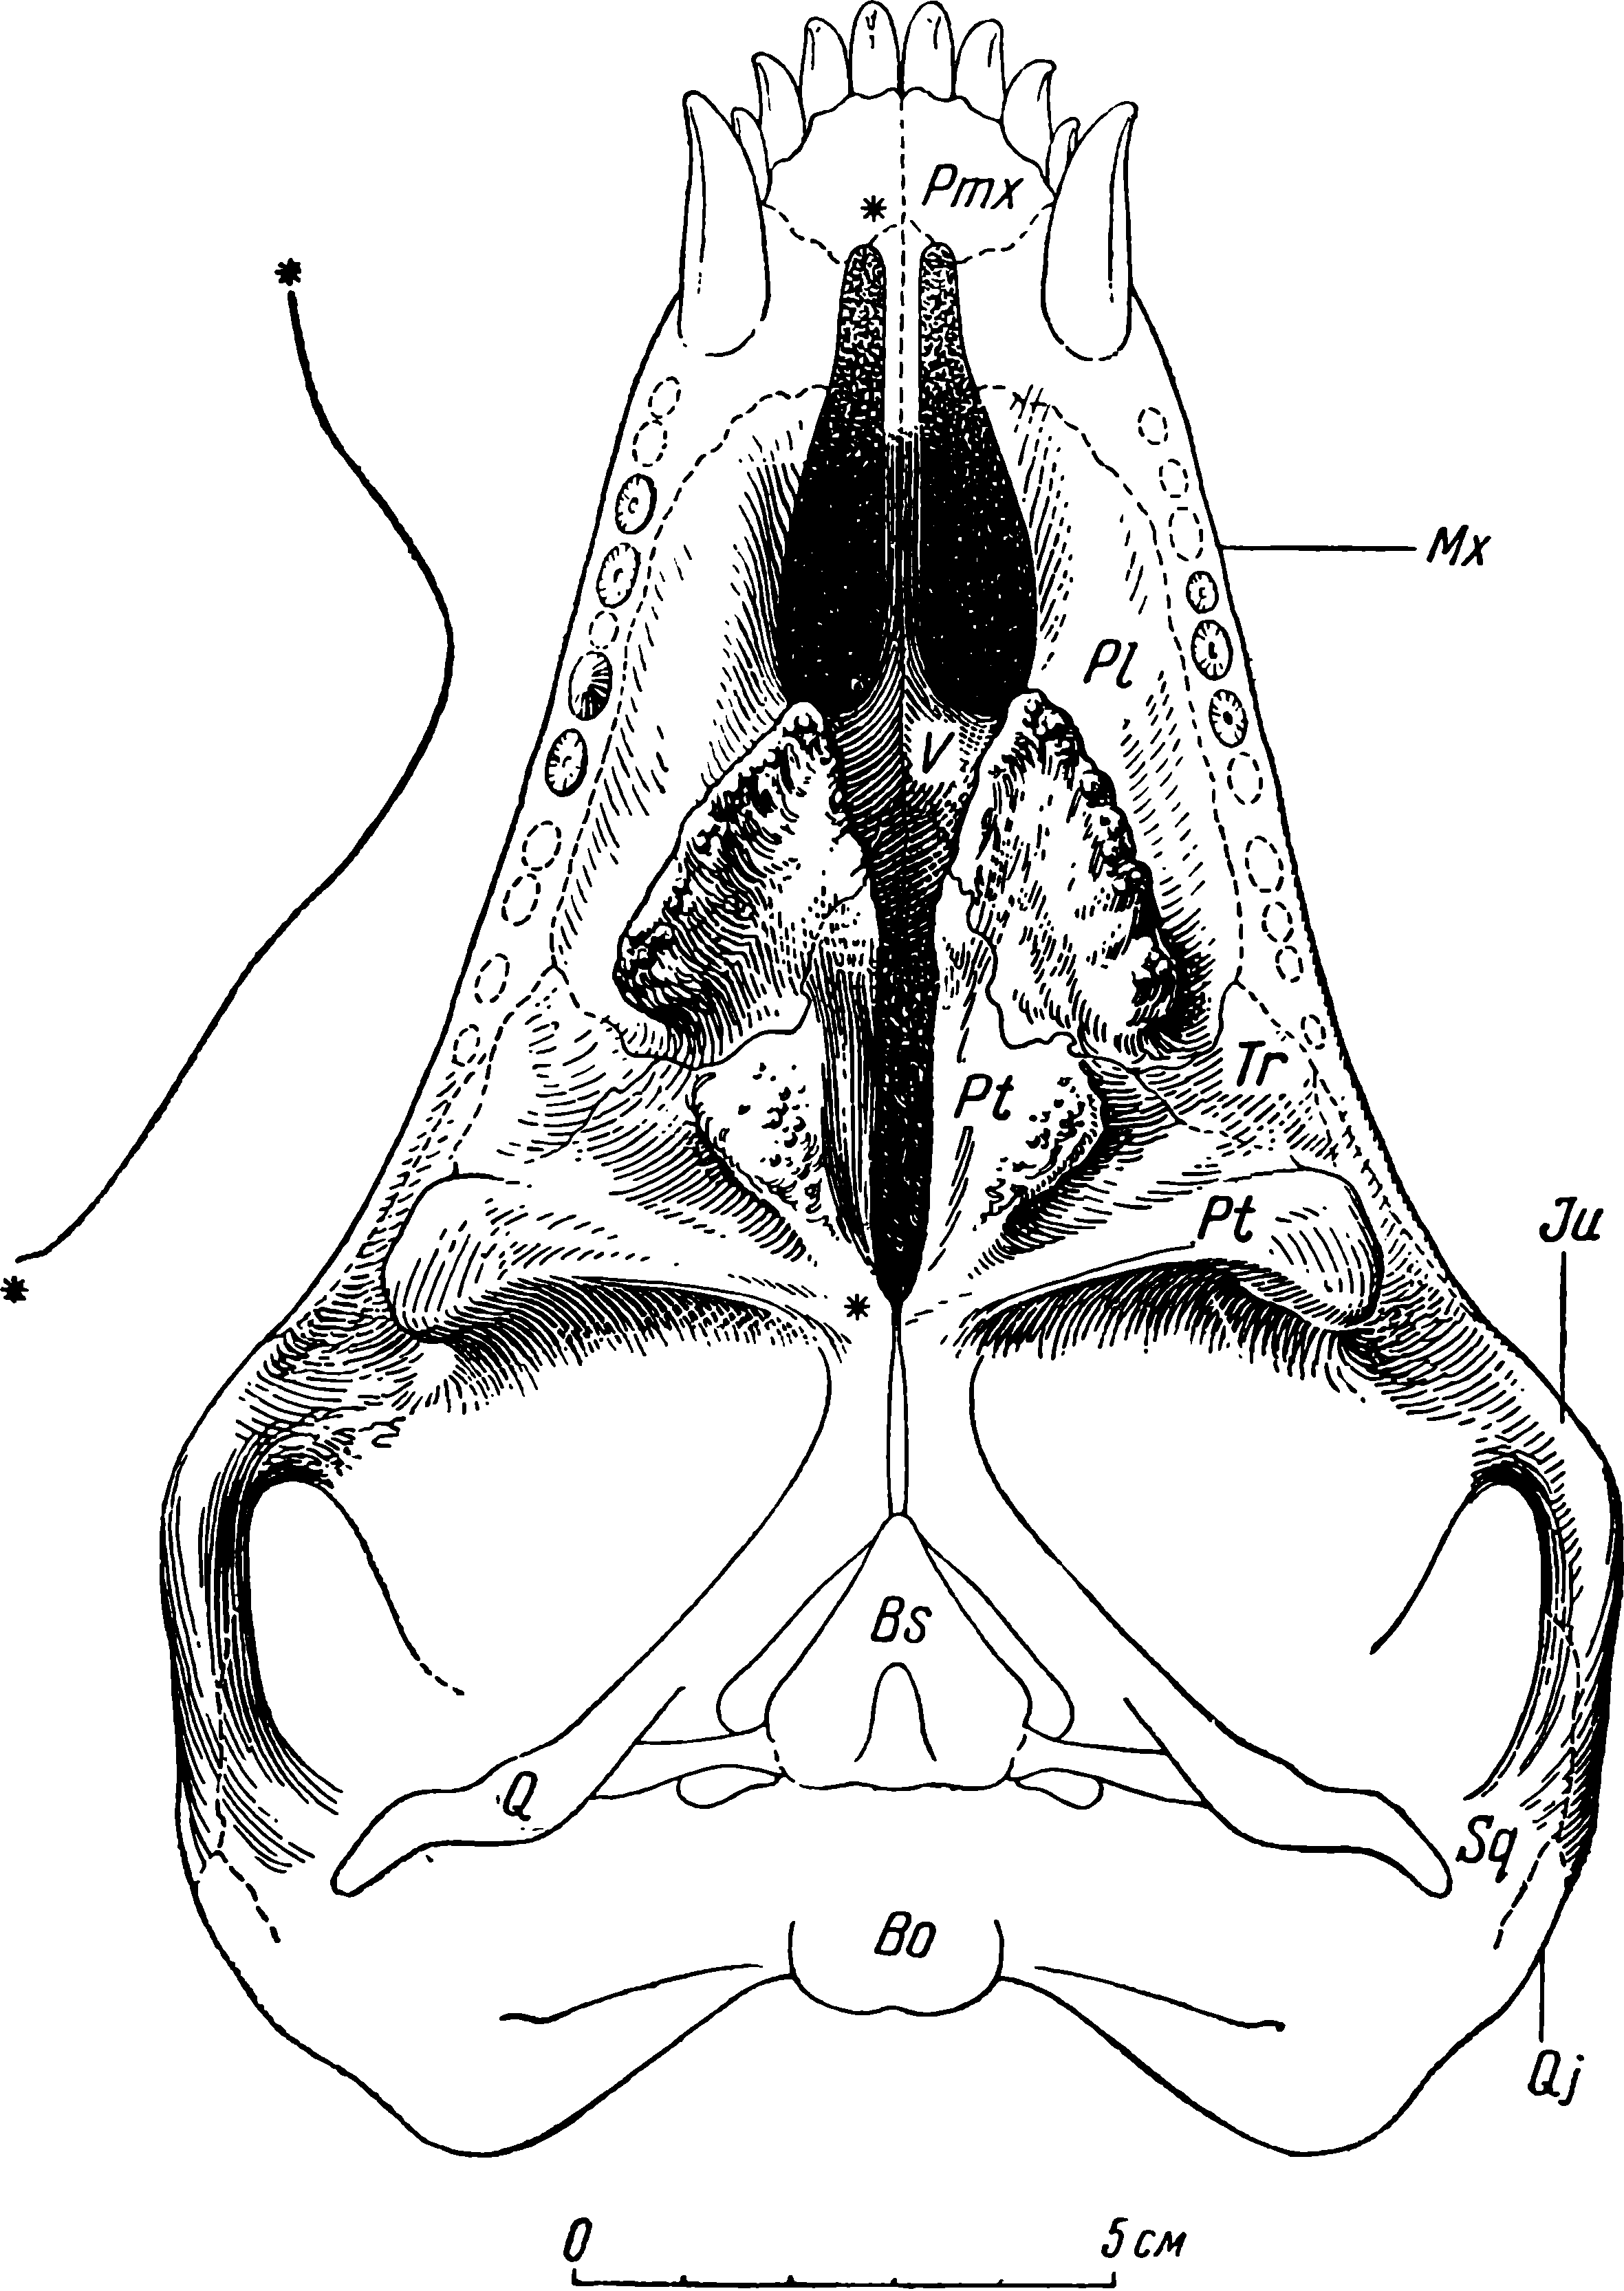 Рис. 52. Phthinosuchus discors gen. et sp. nov. Череп ЛГМ/ЧМП № 3, нёбная поверхность. Слева изображен профиль нёбной поверхности по сагиттальному шву от и до отмеченных звездочками точек. Обозначения см. рис. 3, 5, 6, 7